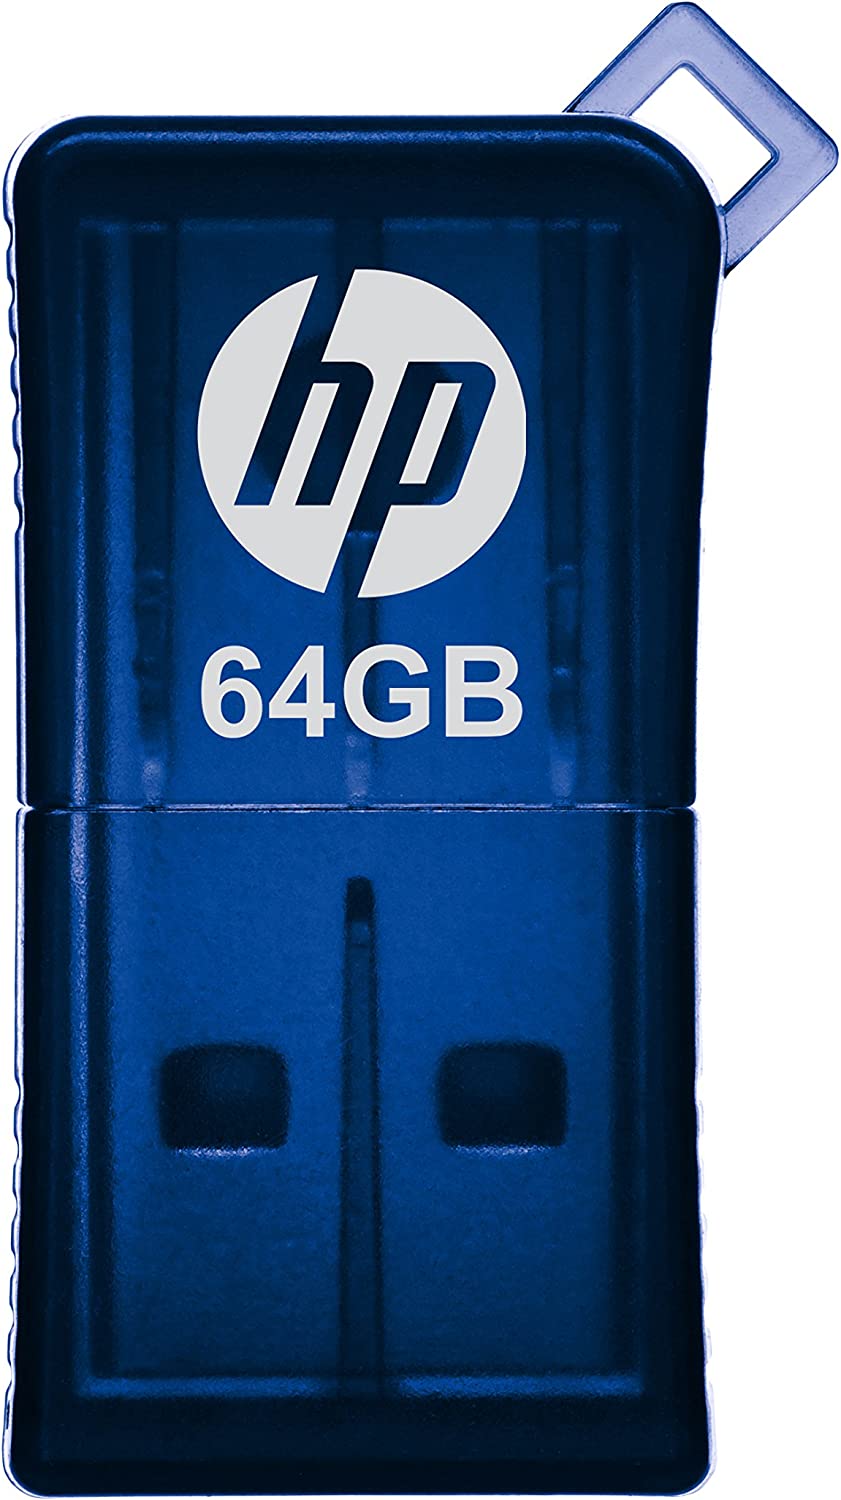 Pen Drive Mini HP USB 2.0 V165W 16GB